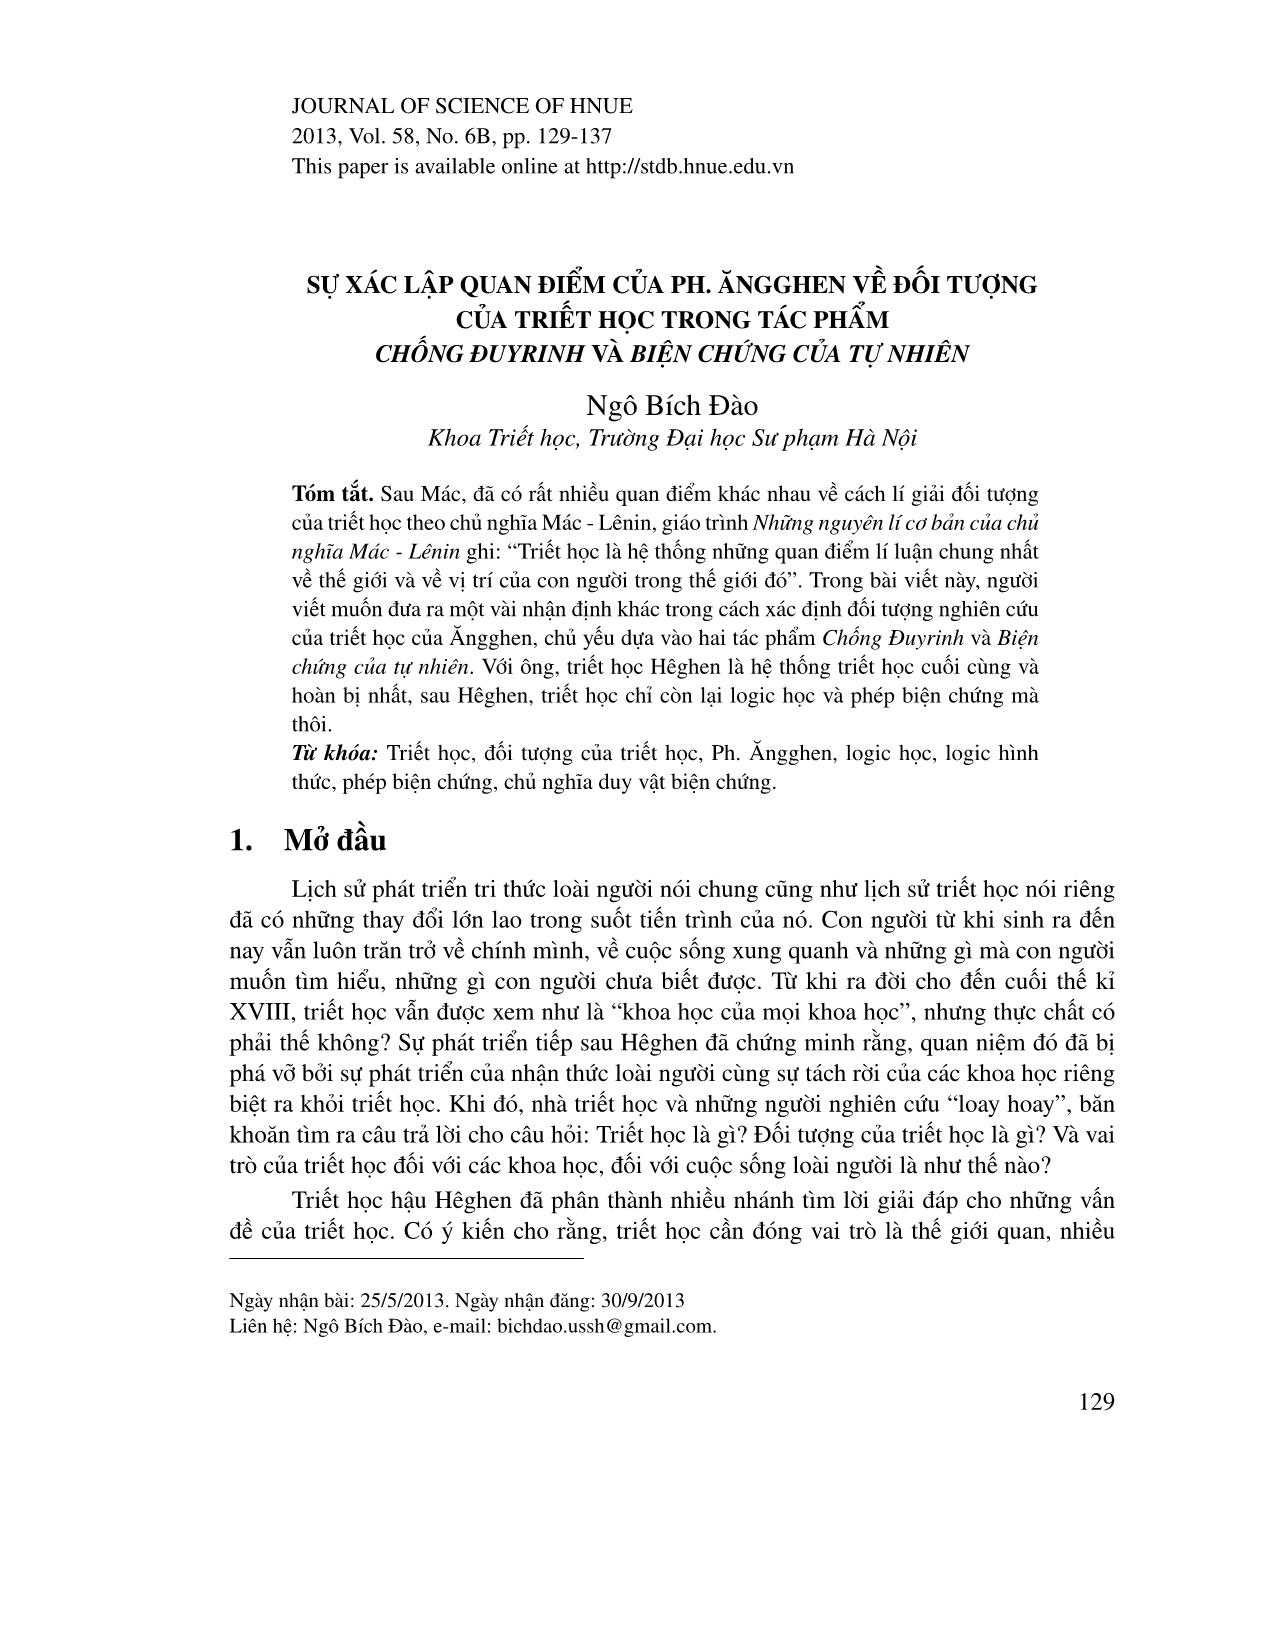 Sự xác lập quan điểm của Ph. Ăngghen về đối tượng của triết học trong tác phẩm Chống Đuyrinh và biện chứng của tự nhiên trang 1